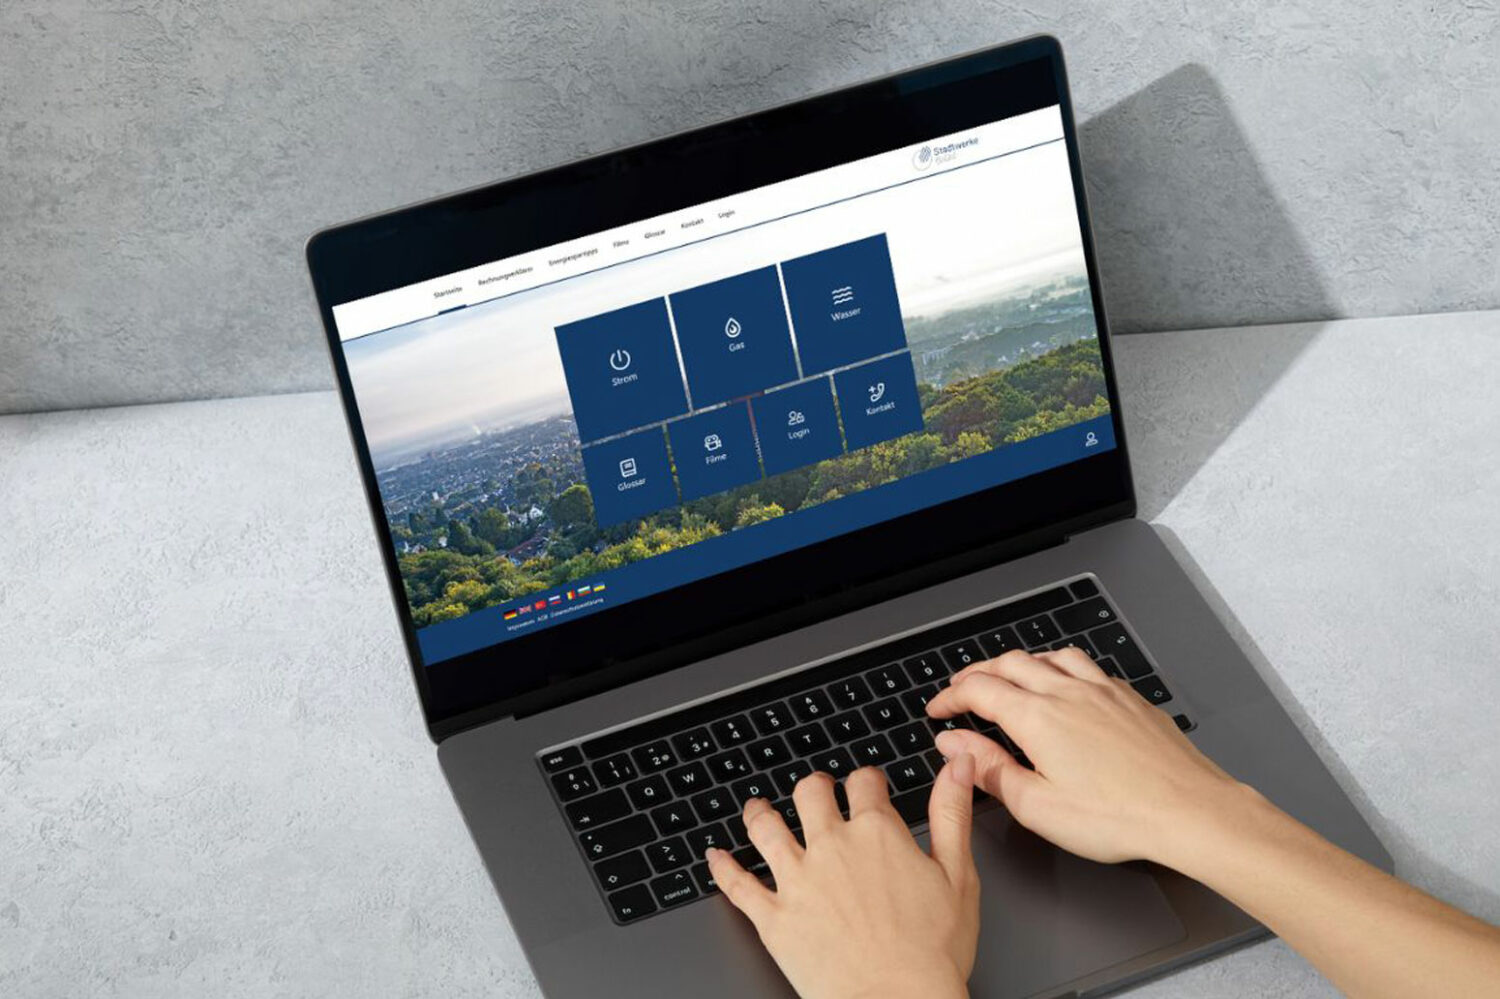 Hände auf der Tastatur eines Laptops, dessen Bildschirm die Webseite des Rechnungserklärer zeigt.